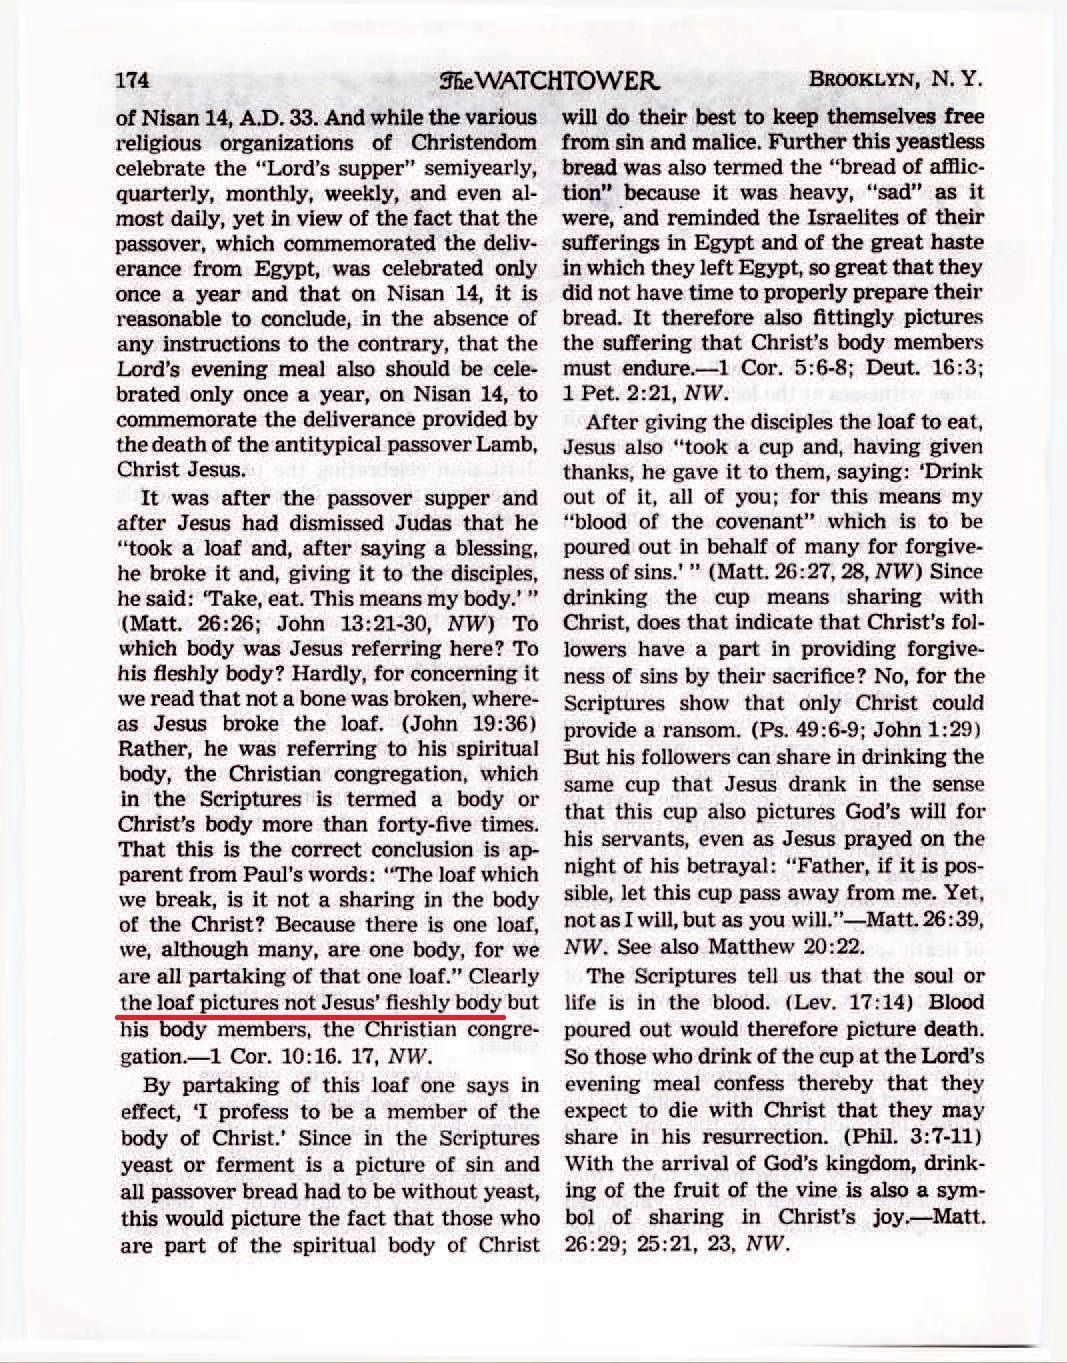 le collège central, sa vérité va-t-elle croissant ?  - Page 3 The-Watchtower-March-15-1954-p174